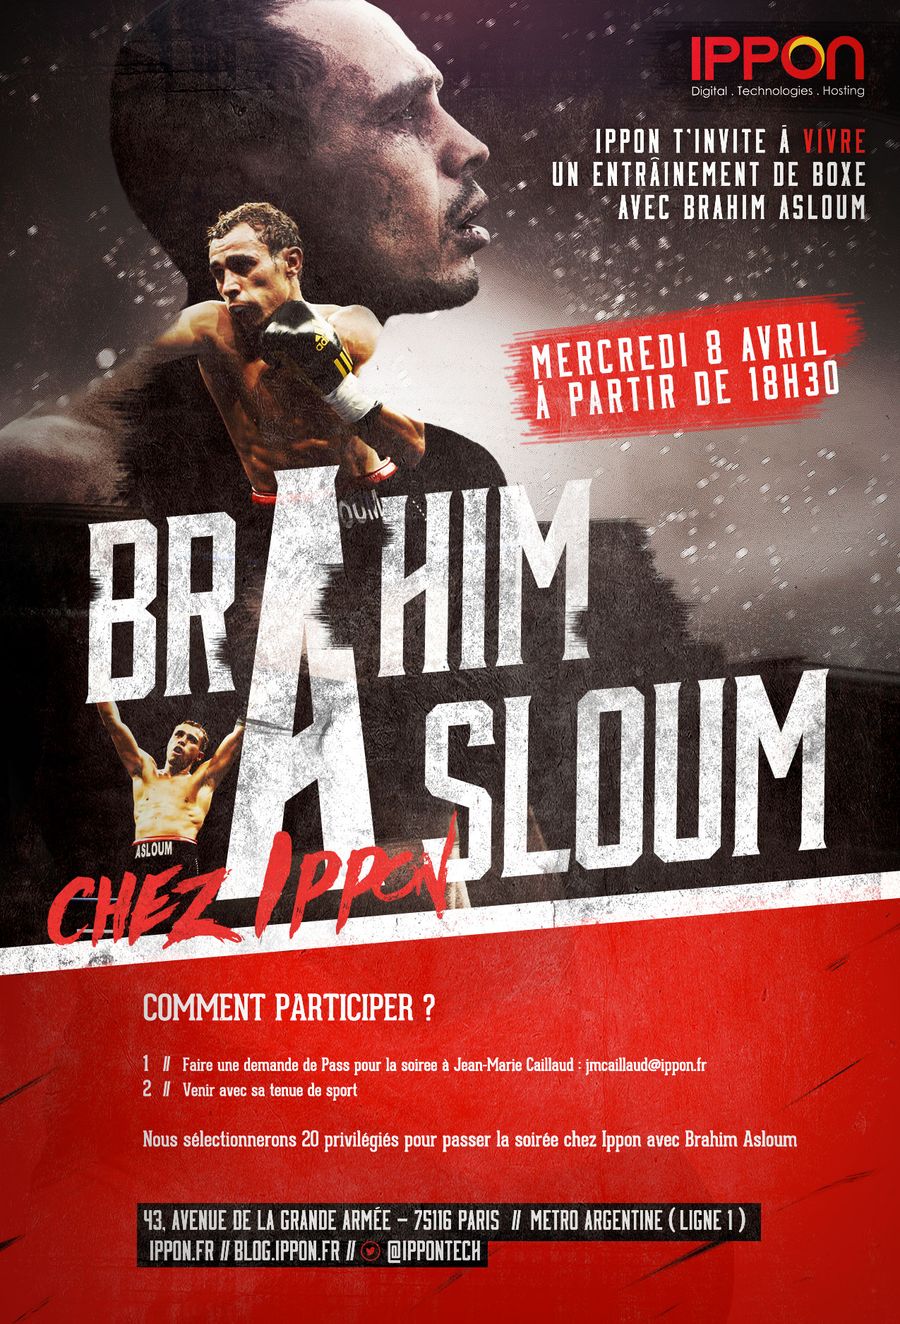 Une soirée boxe avec Brahim Asloum vue par 2 Ippon